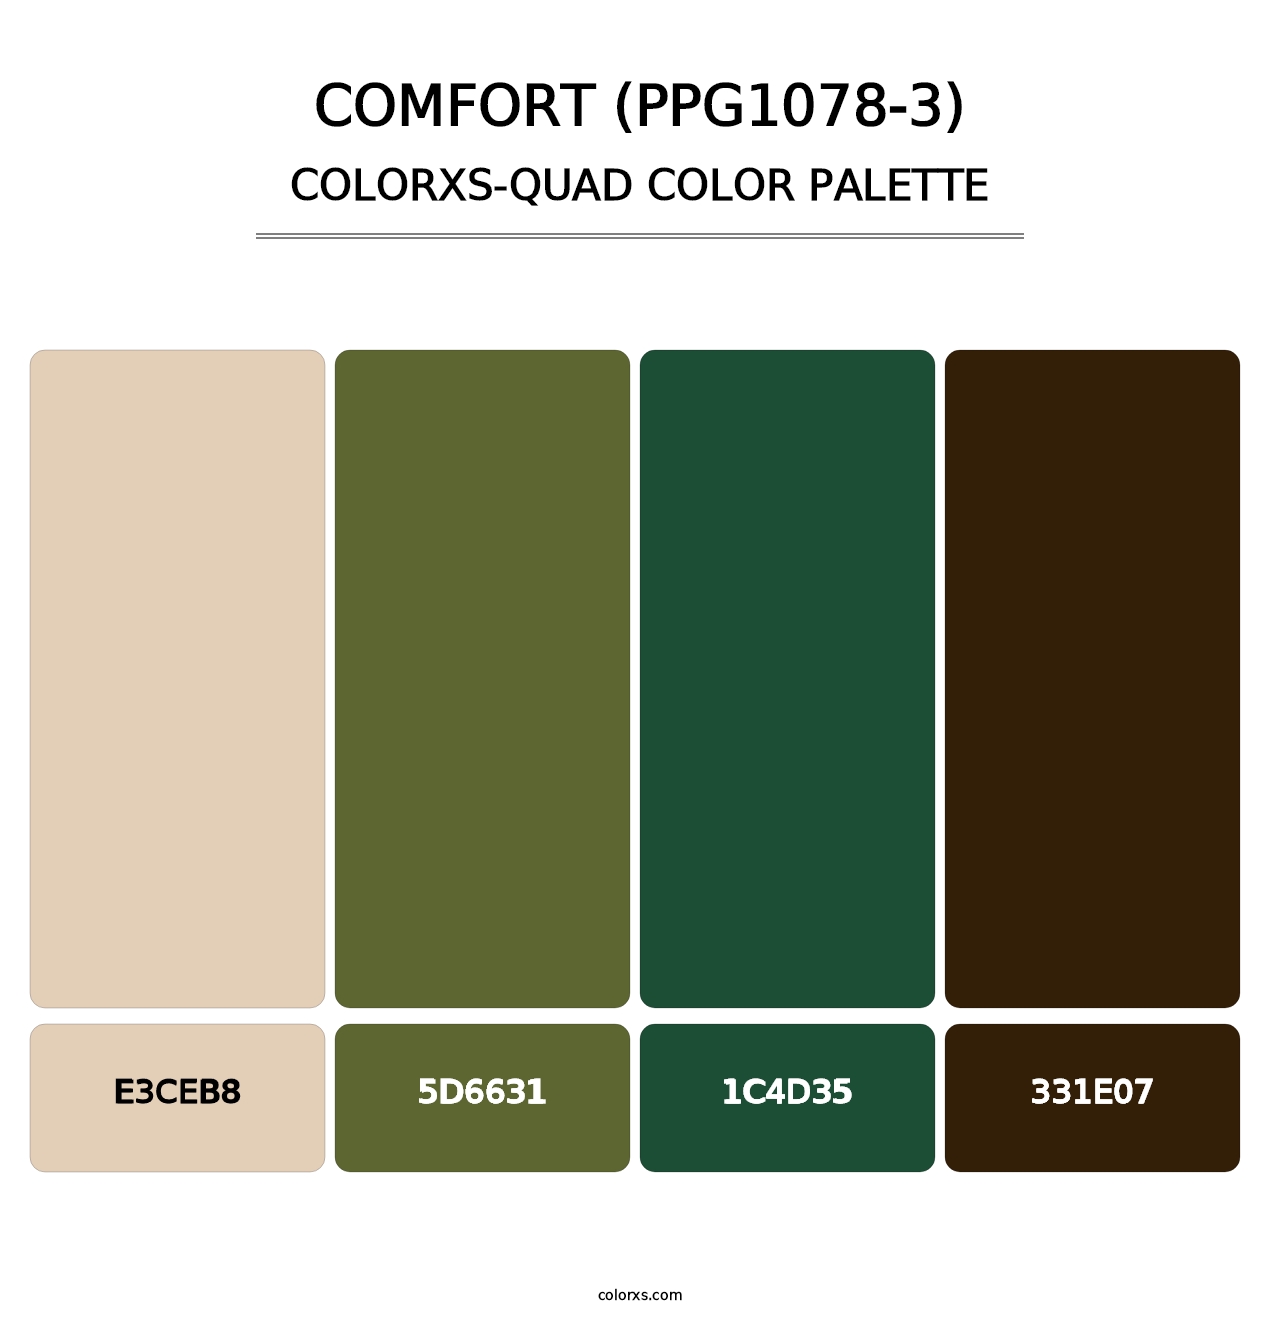 Comfort (PPG1078-3) - Colorxs Quad Palette